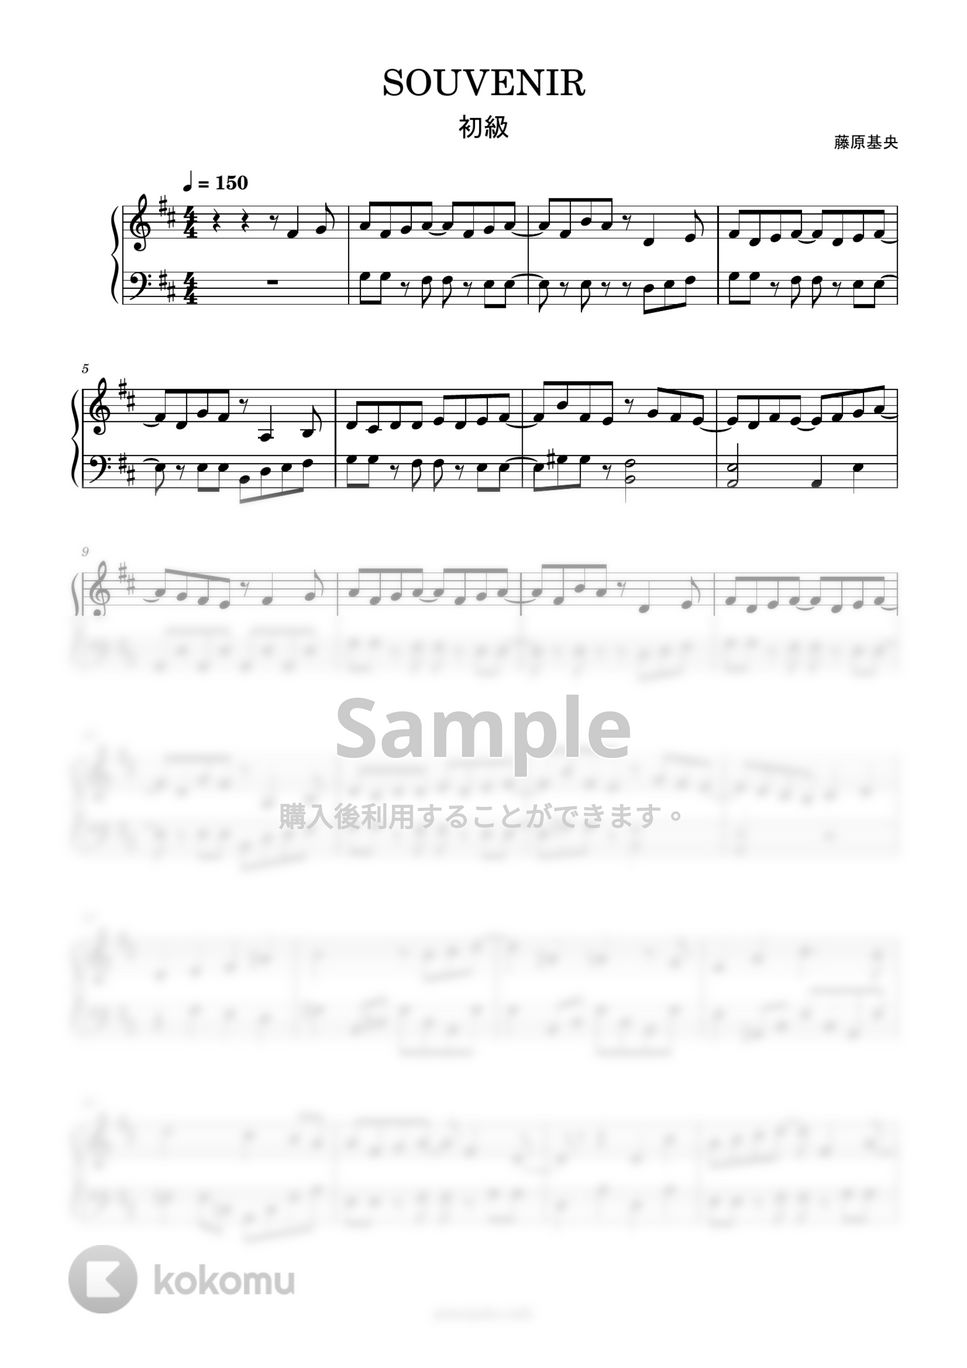 スパイファミリー - SOUVENIR (簡単楽譜) by ピアノ塾